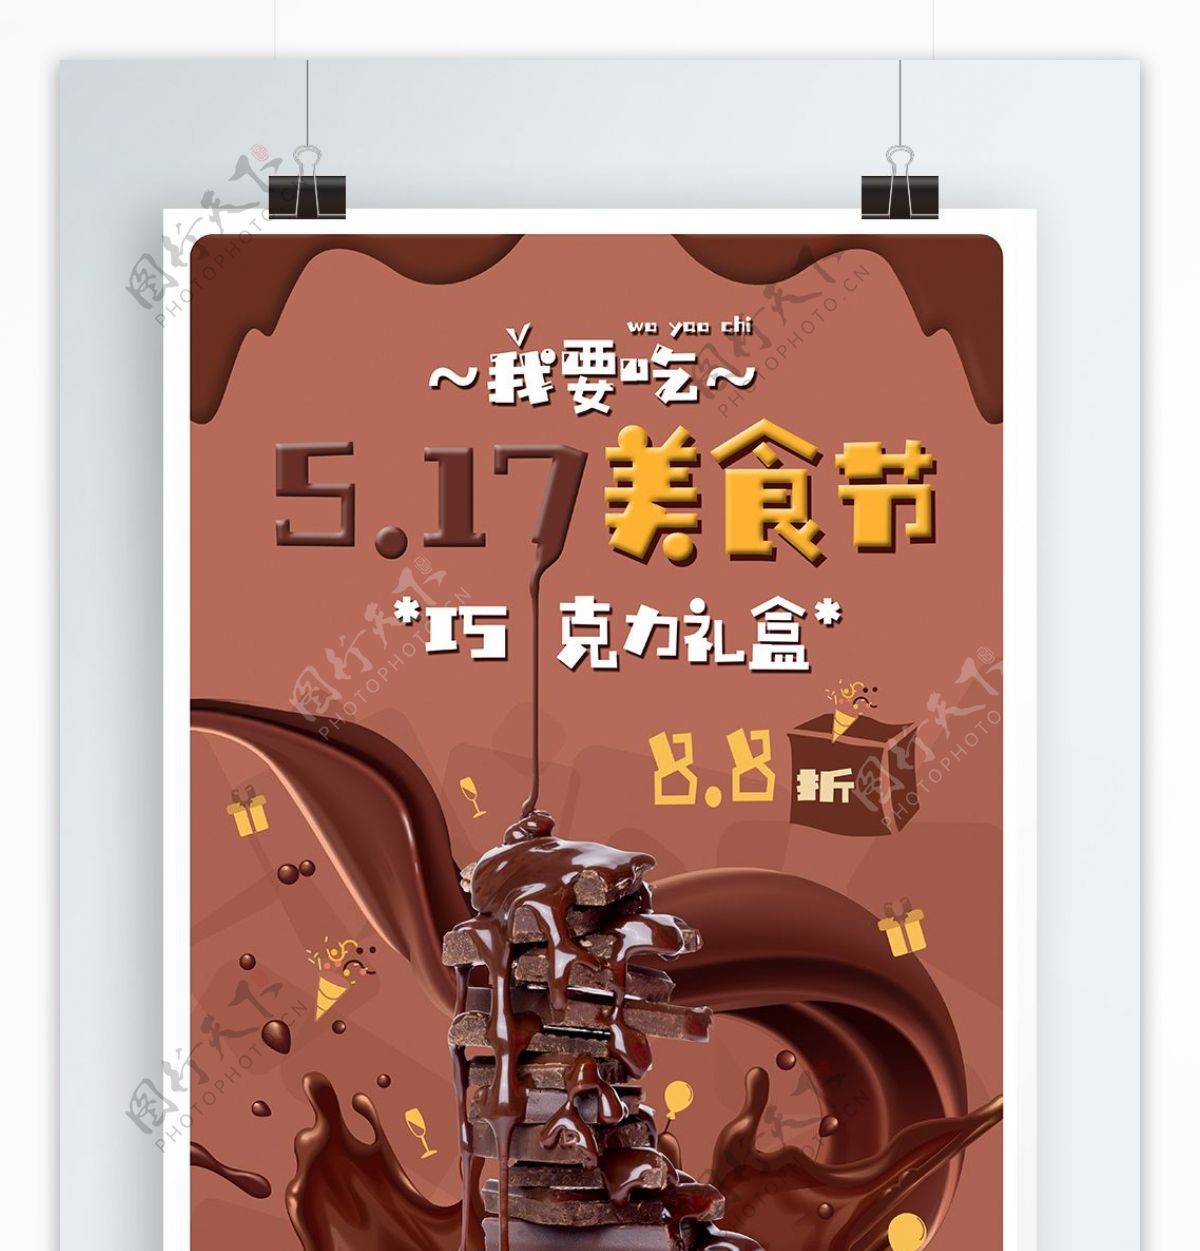 517美食节巧克力海报